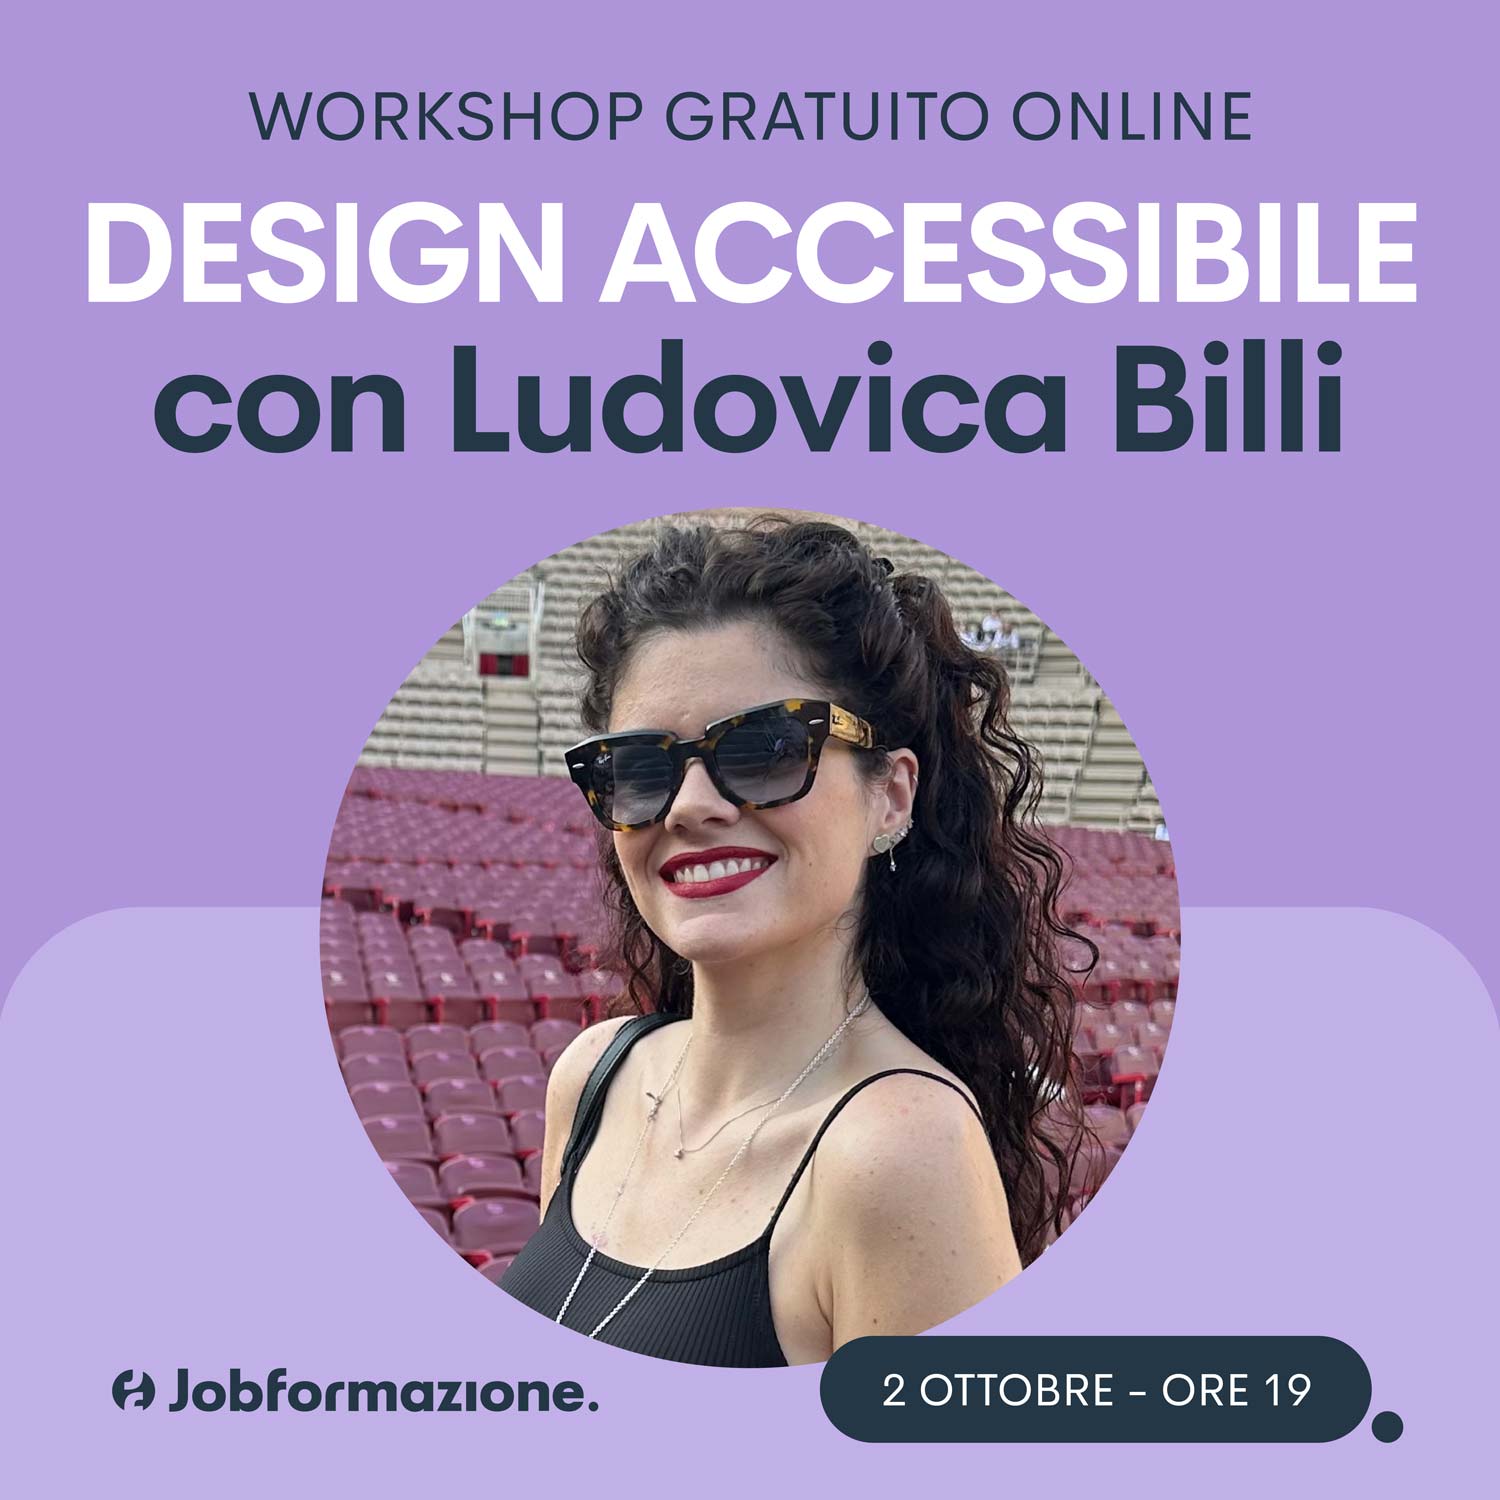 Ludovica billi design accessibile